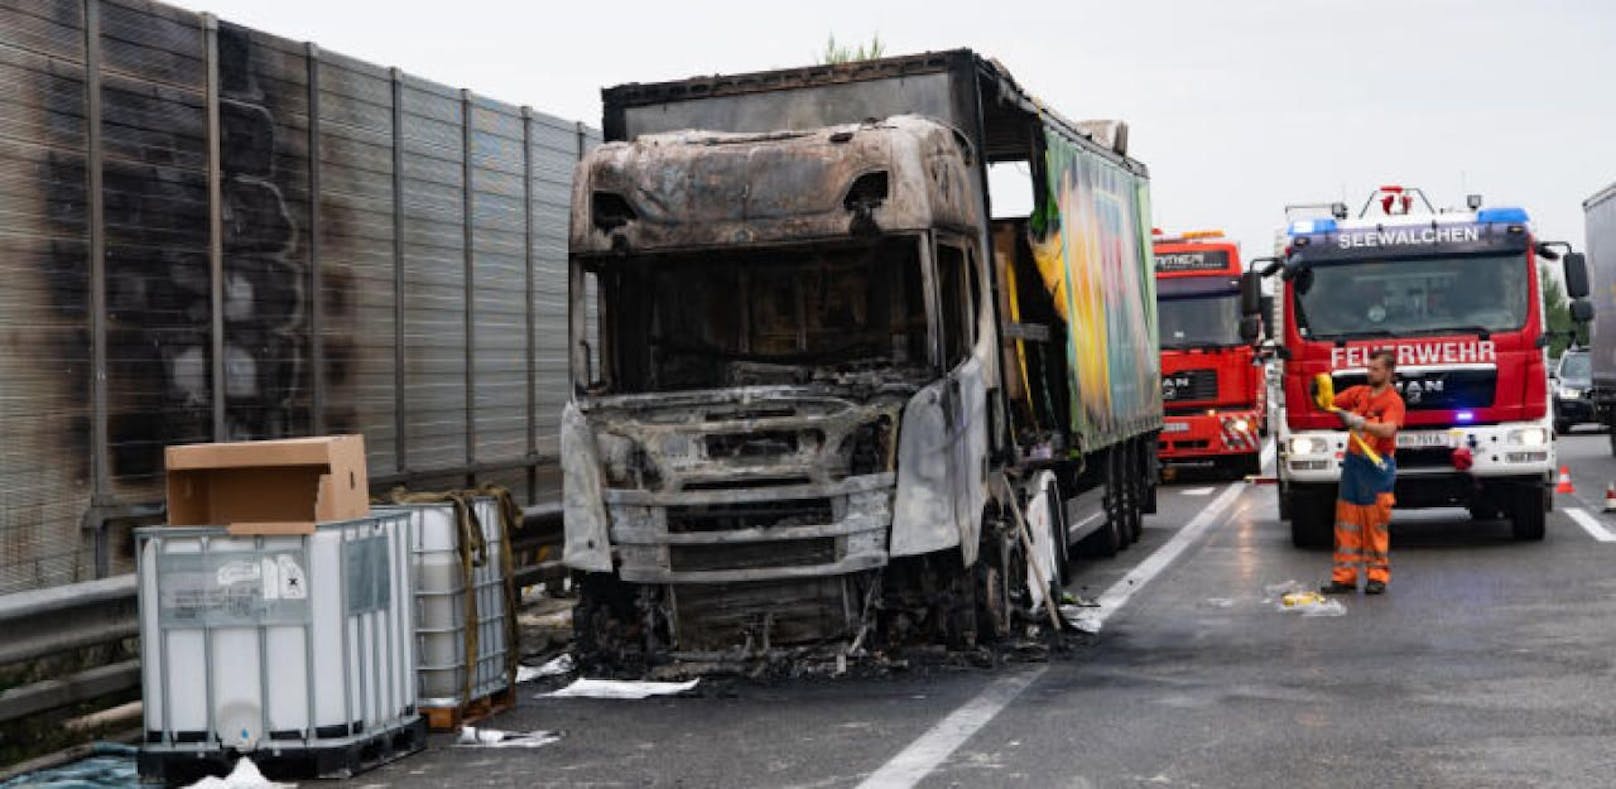 Bei Aurach am Hongar ist auf der A1 ein Lkw ausgebrannt, der Fahrer konnte sich in letzter Sekunde retten.